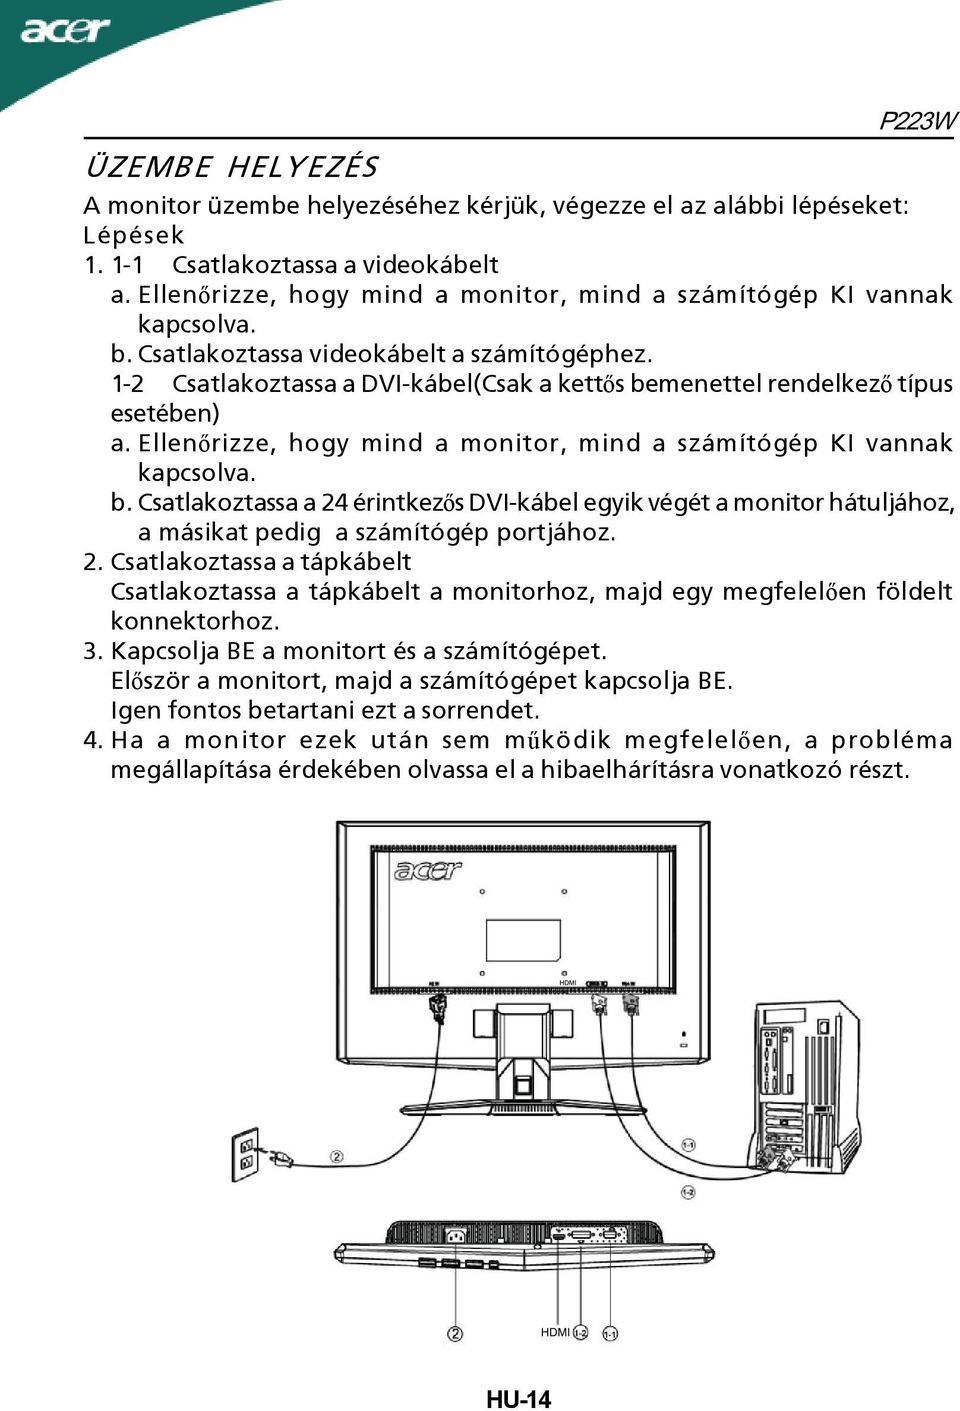 1-2 Csatlakoztassa a DVI-kábel(Csak a kettős bemenettel rendelkező típus esetében) a. Ellenőrizze, hogy mind a monitor, mind a számítógép KI vannak kapcsolva. b.csatlakoztassa a 24 érintkezős DVI-kábel egyik végét a monitor hátuljához, a másikat pedig a számítógép portjához.